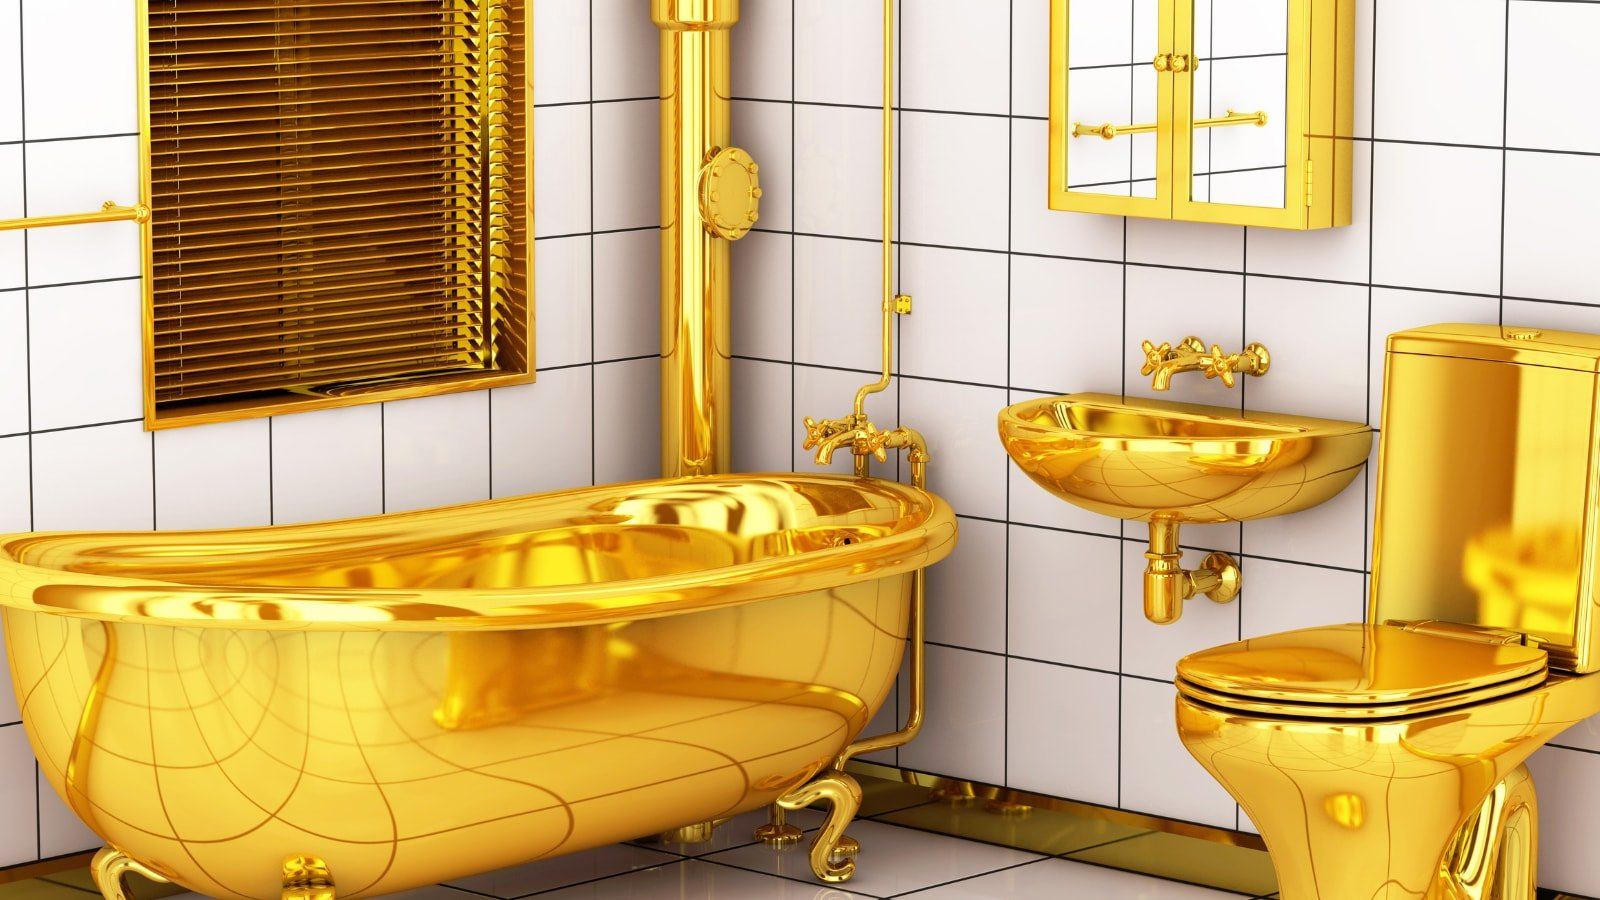 SIMS 4 золотой унитаз. Золотая ванна. Унитаз под золото. Ванна с золотым унитазом.